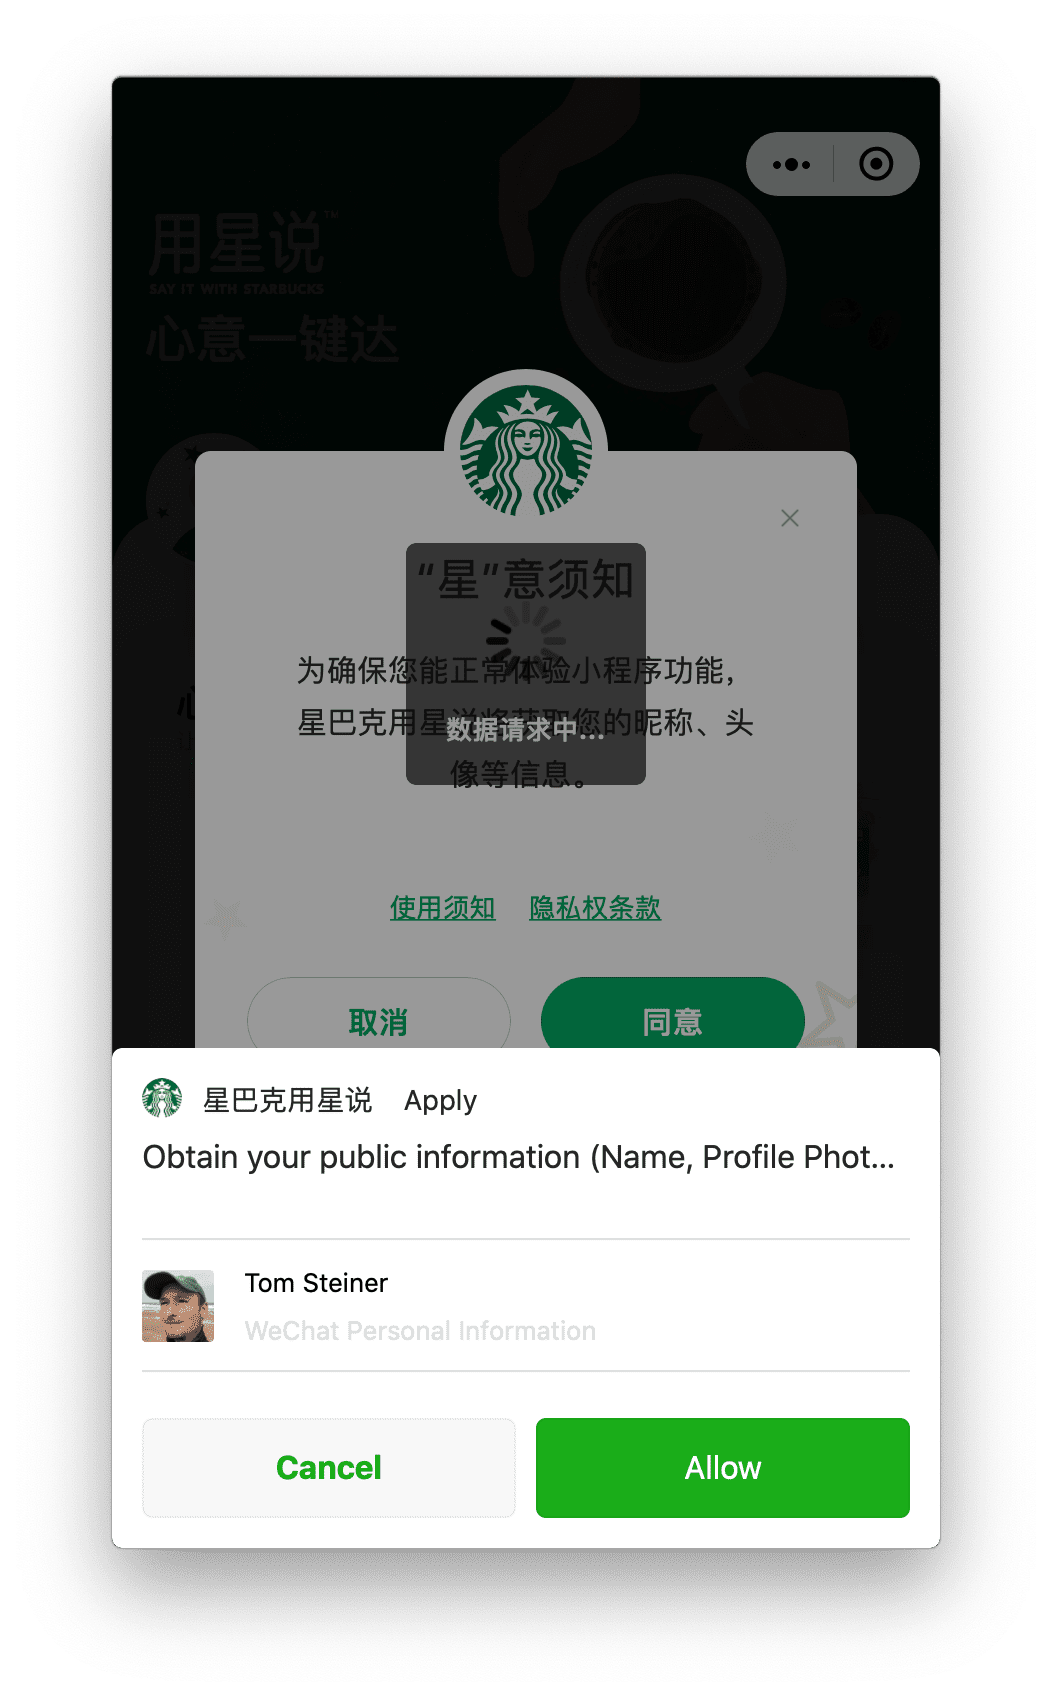 אפליקציית המיני של Starbucks פועלת ב-macOS ומבקשת את הרשאת פרופיל המשתמש שהמשתמש יכול להעניק, באמצעות הנחיה שמופיעה בחלק התחתון.